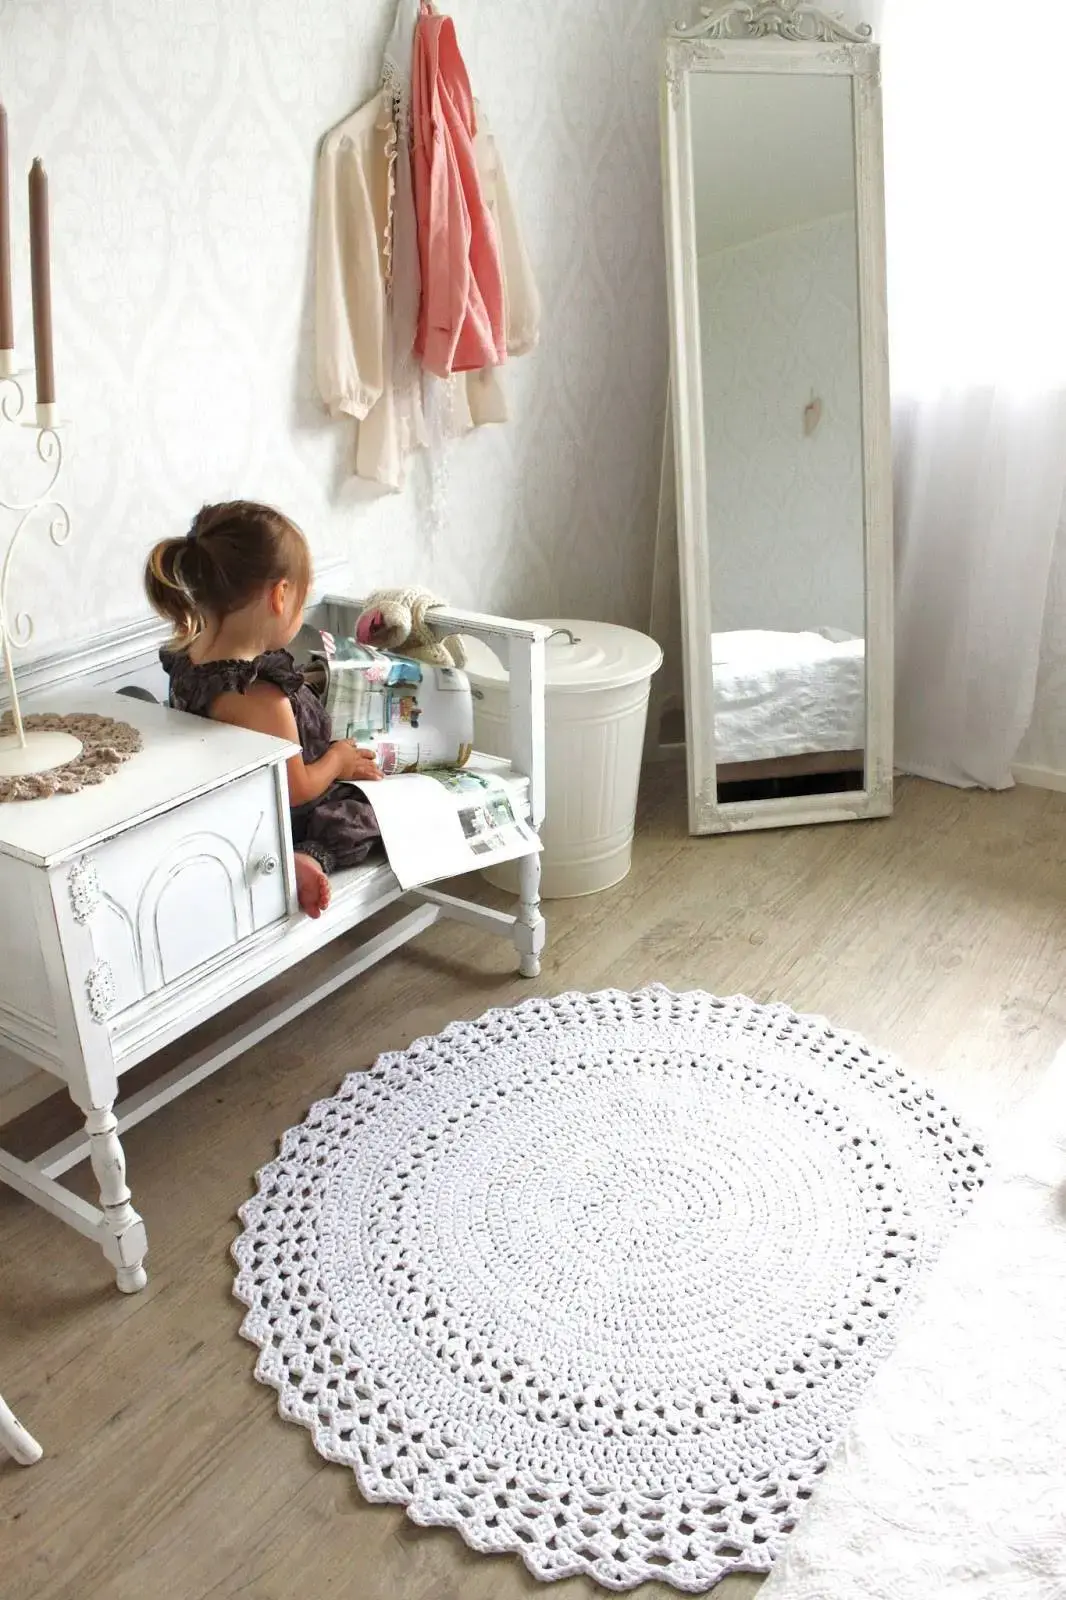 tapete de barbante croche no quarto infantil ambiente decorado circular branca nórdico escandinavo vintage